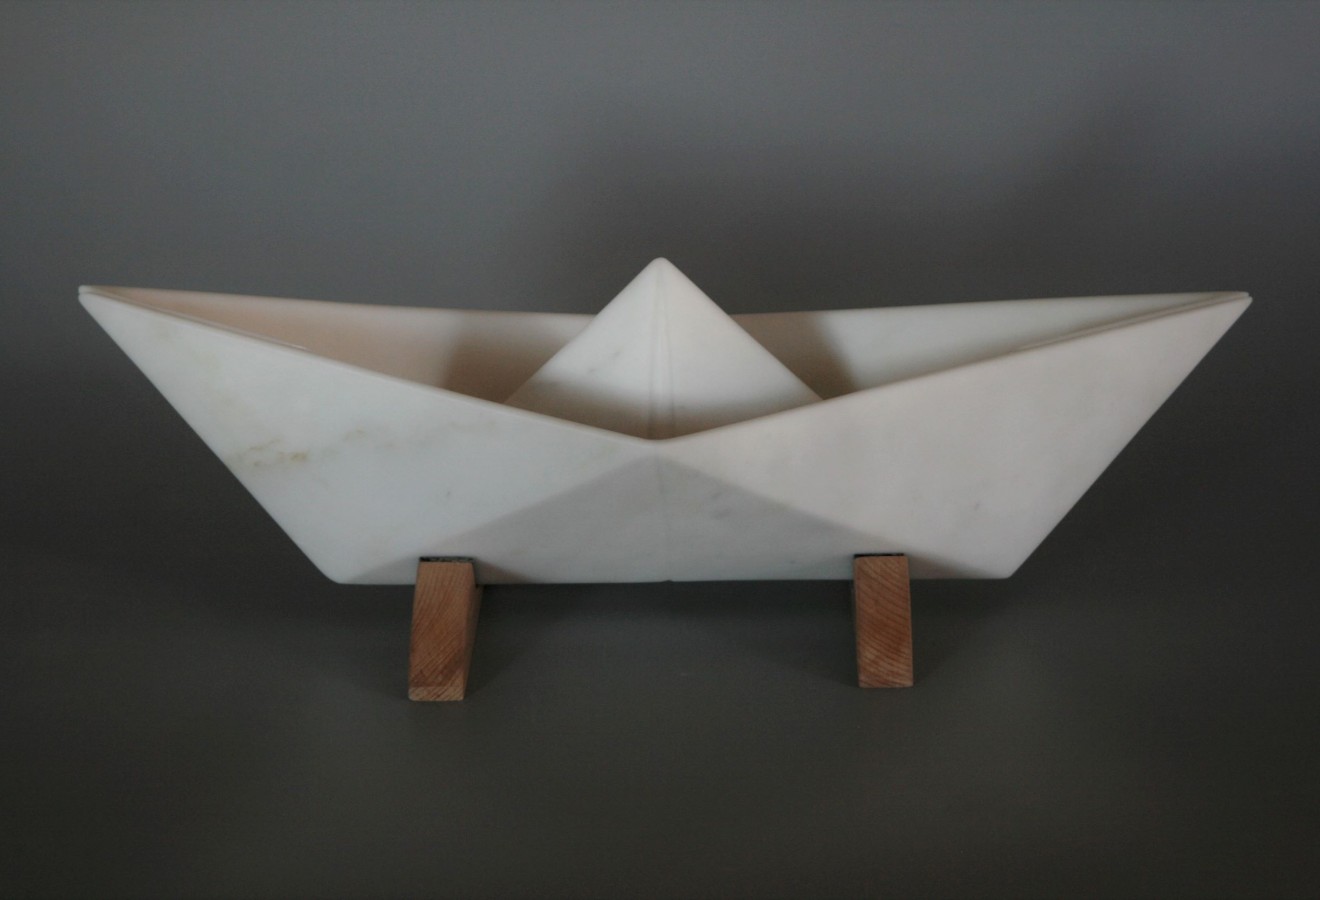 paper boat 